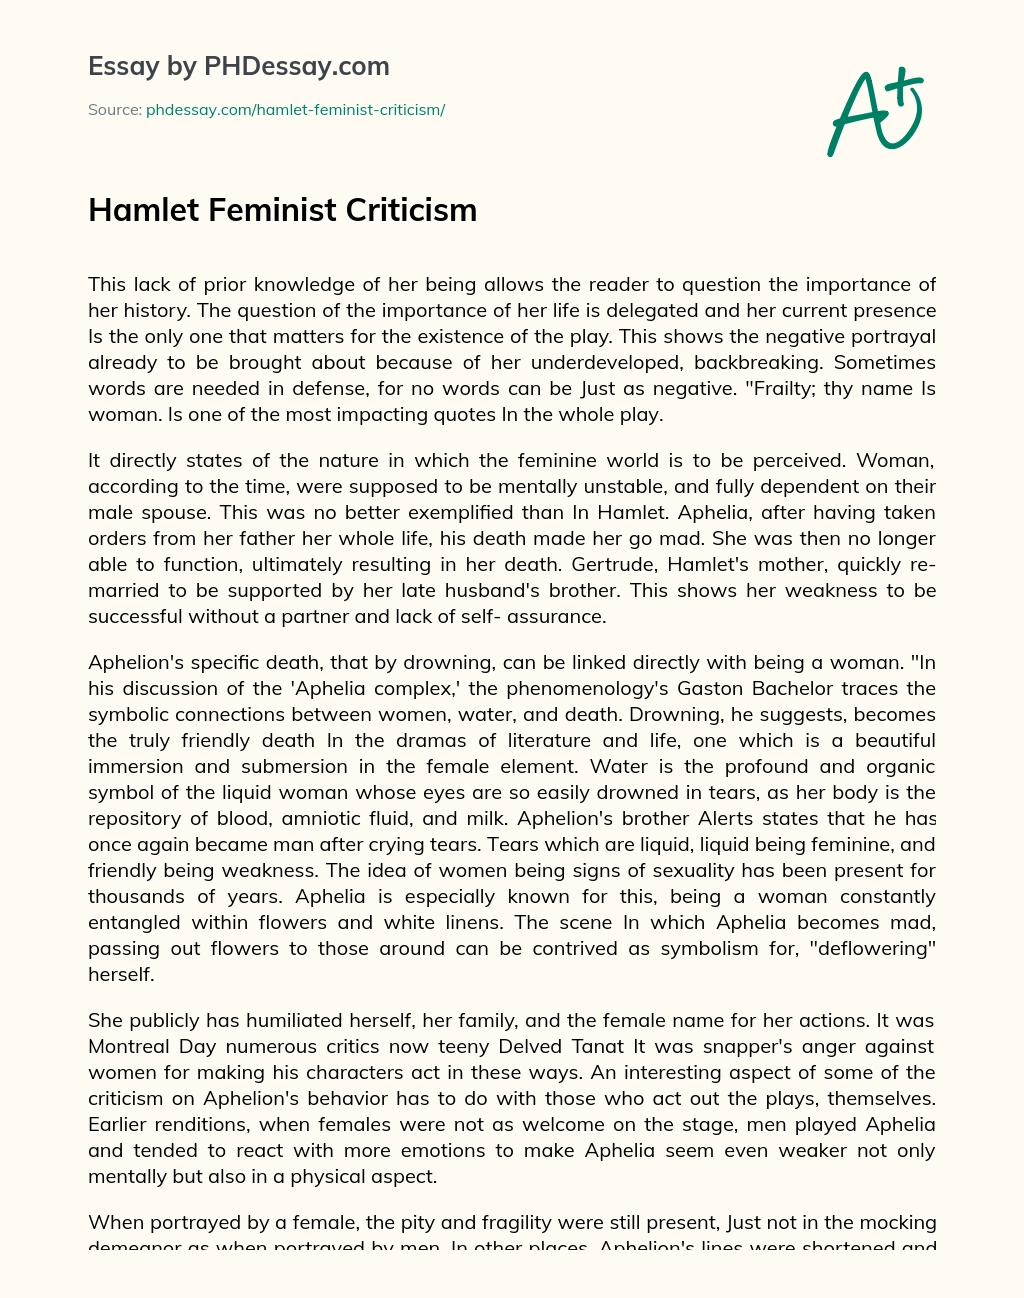 Hamlet Feminist Criticism essay